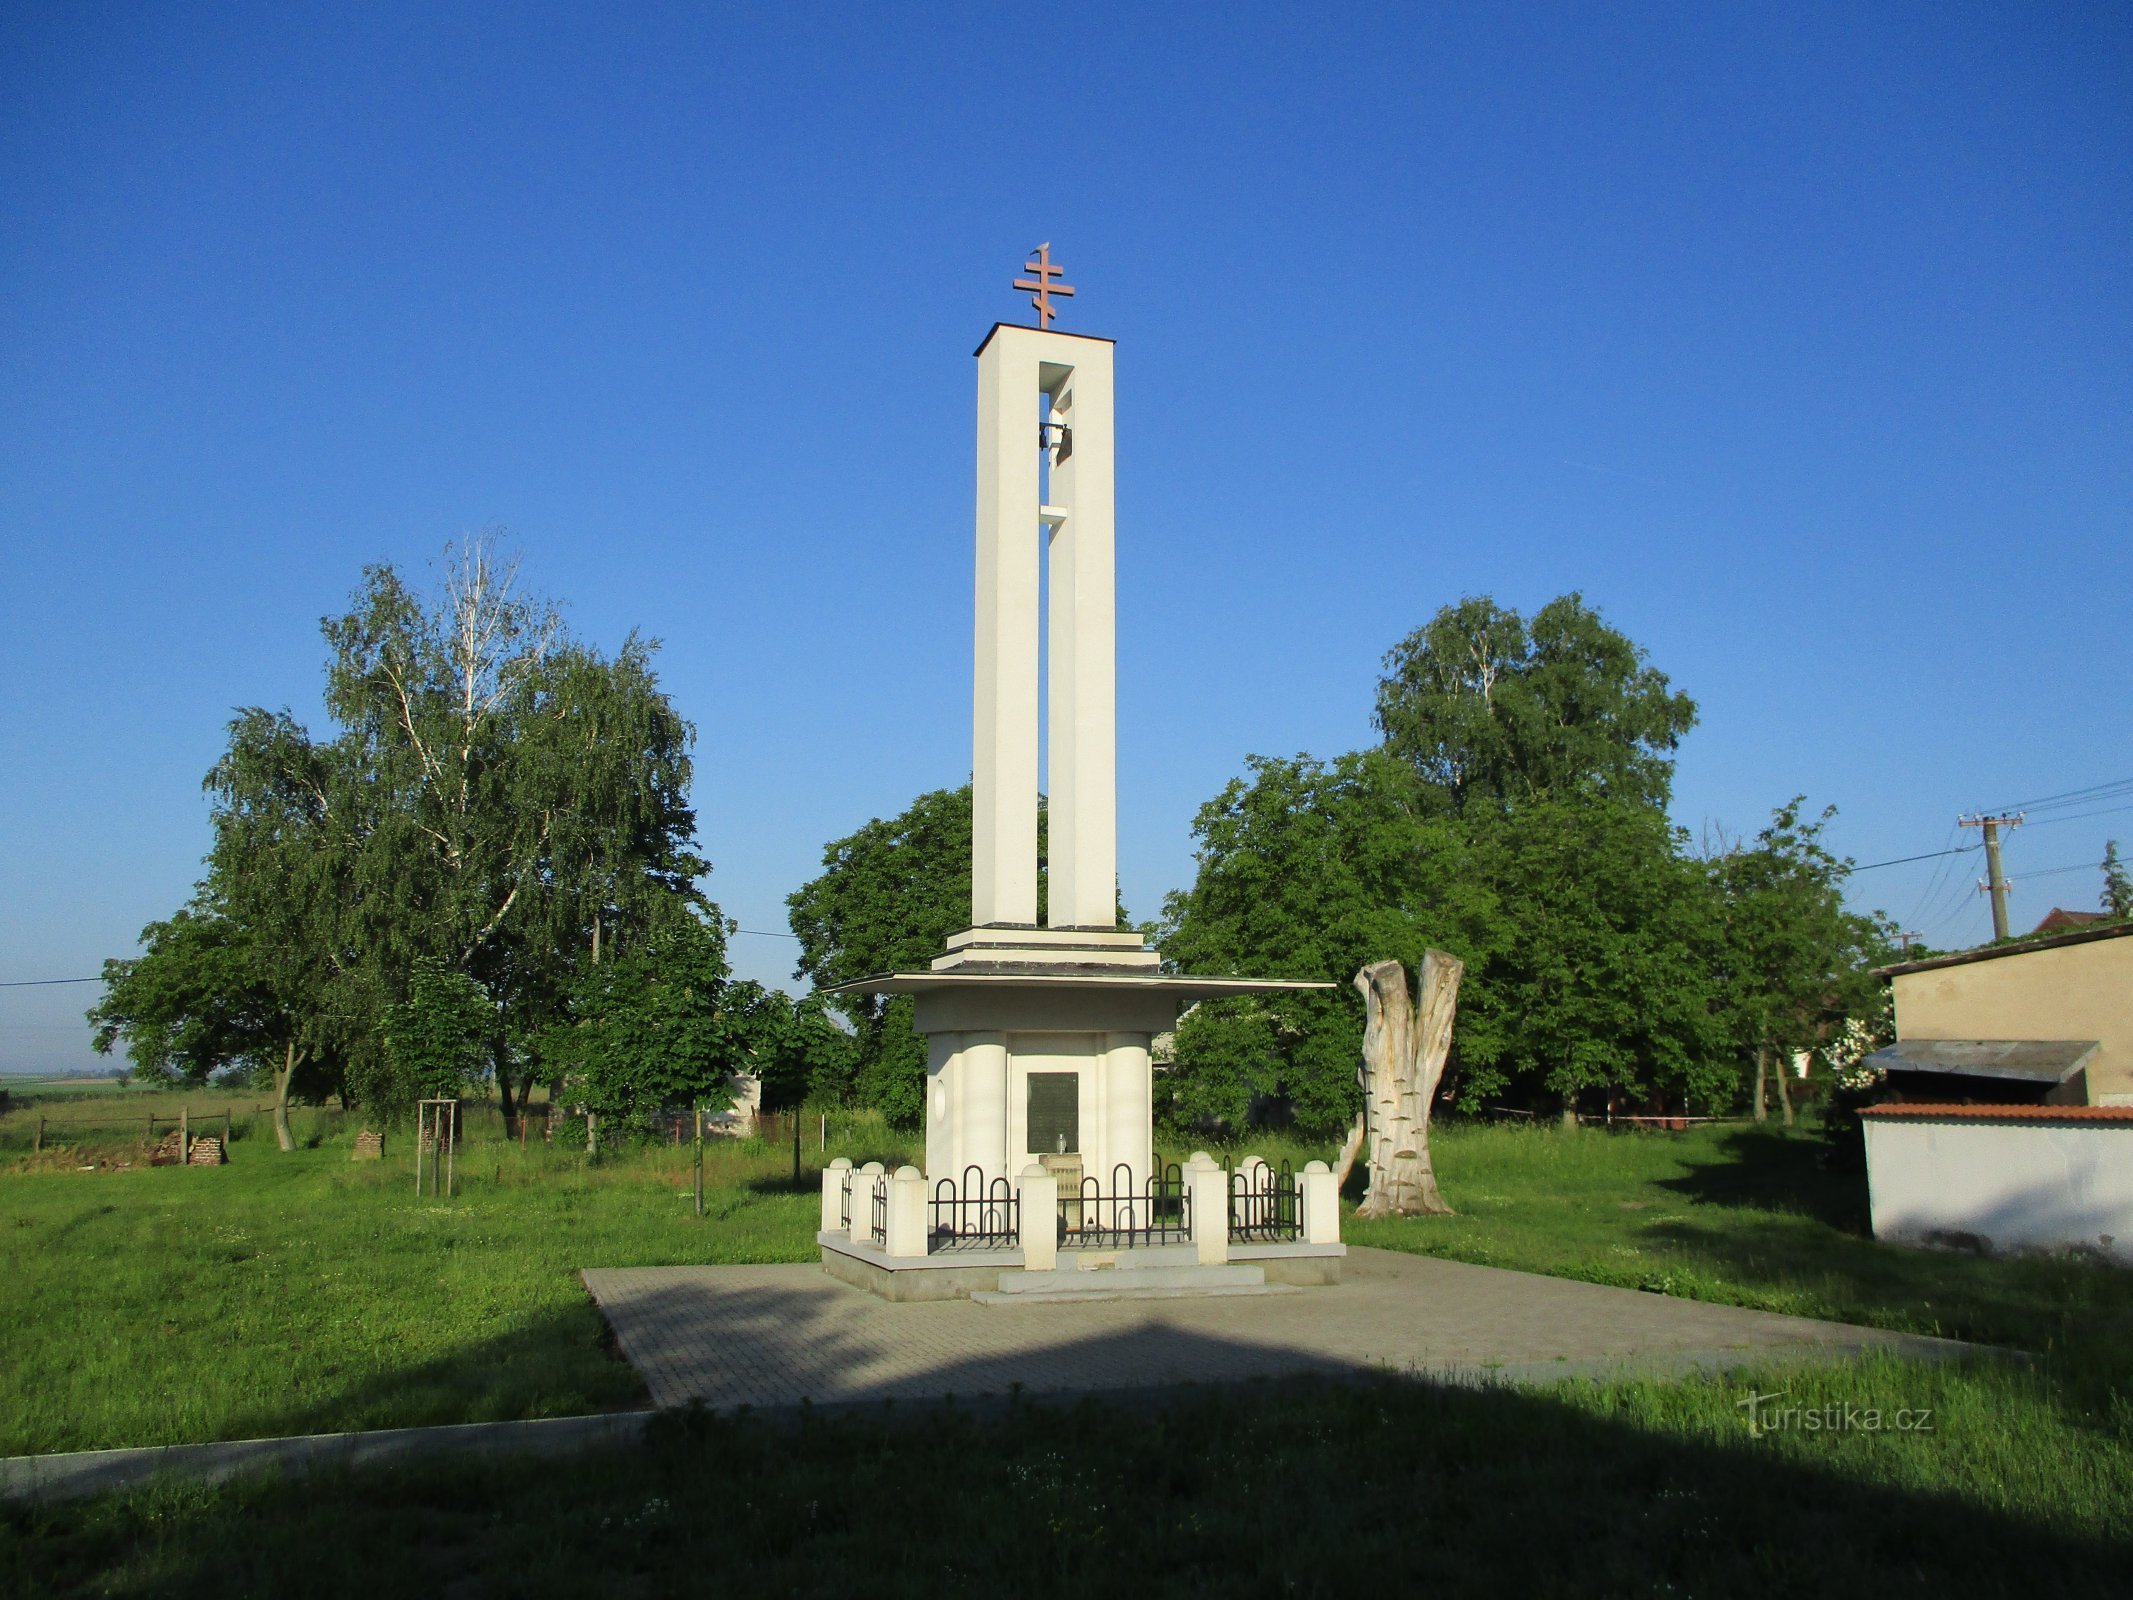 捷克斯洛伐克教堂 (Praskačka) 的钟楼